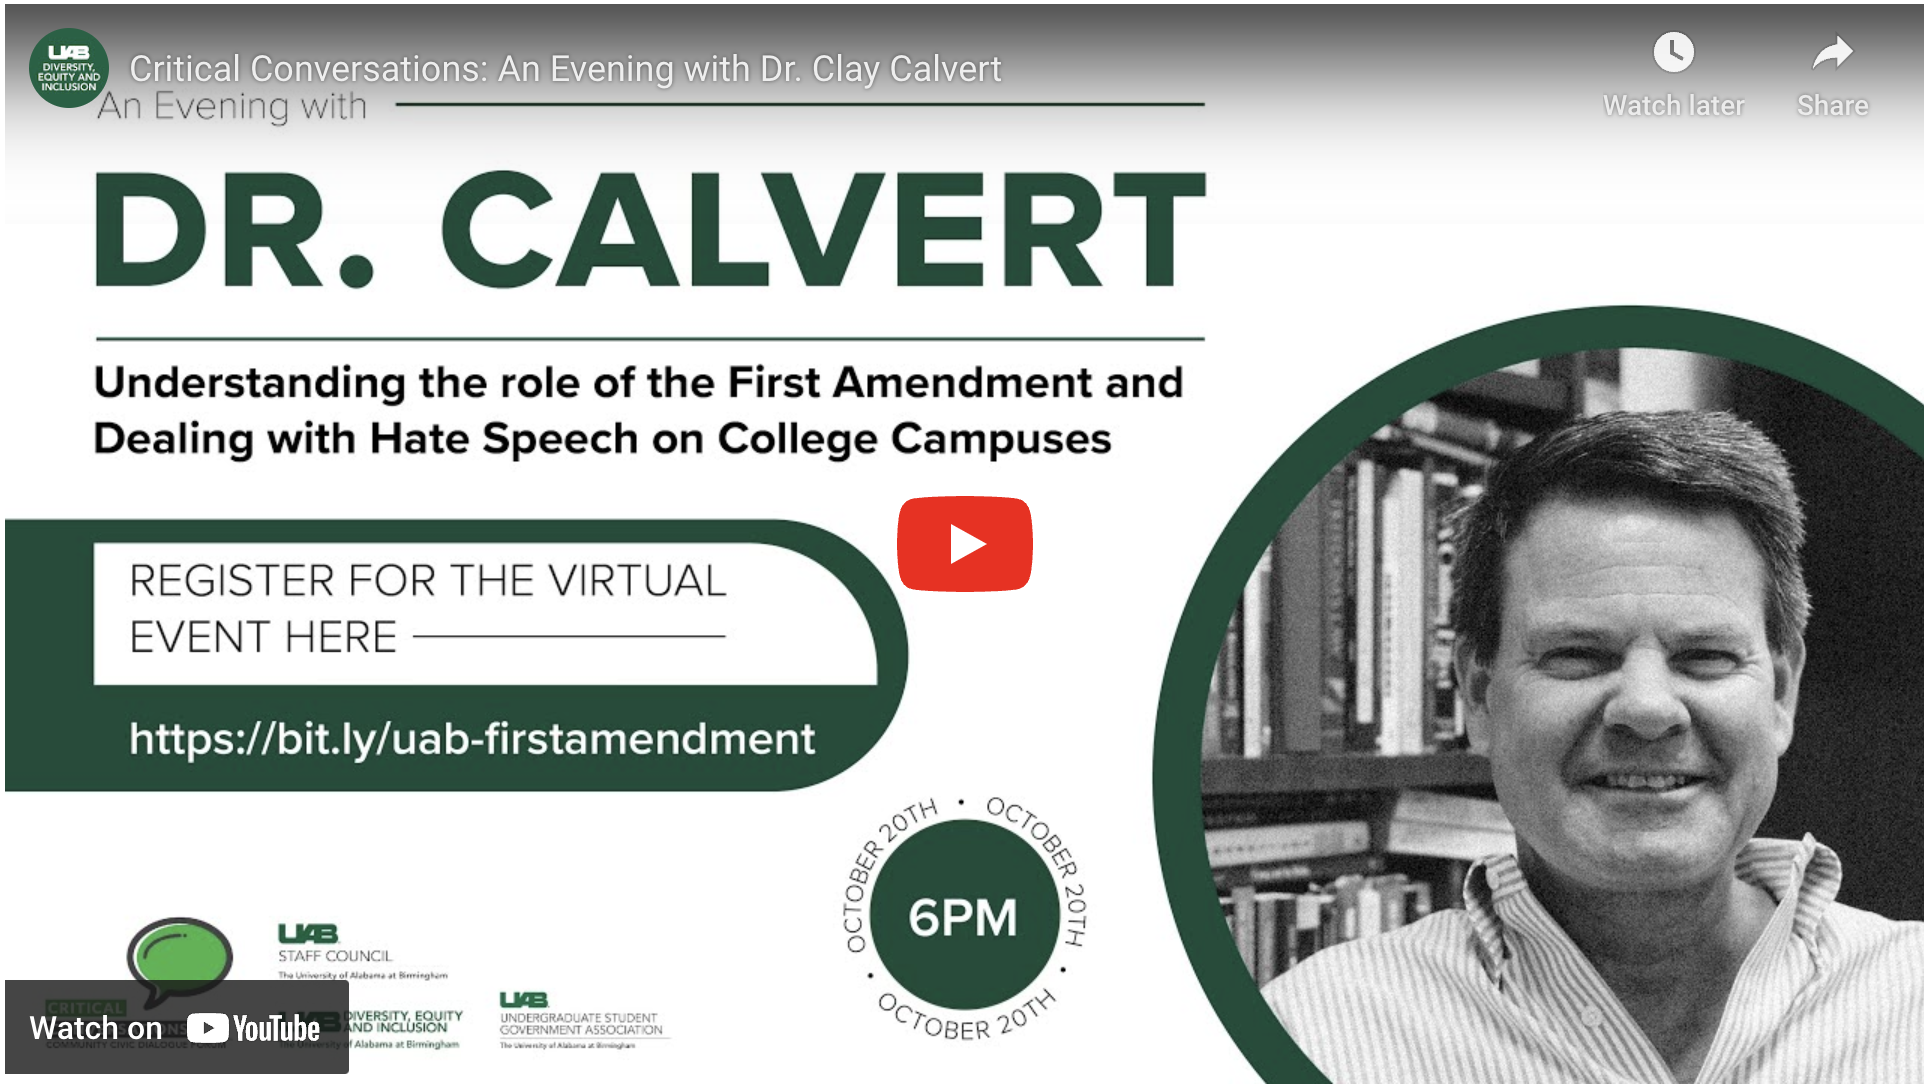 Critical Conversations: An Evening with Dr. Calvert